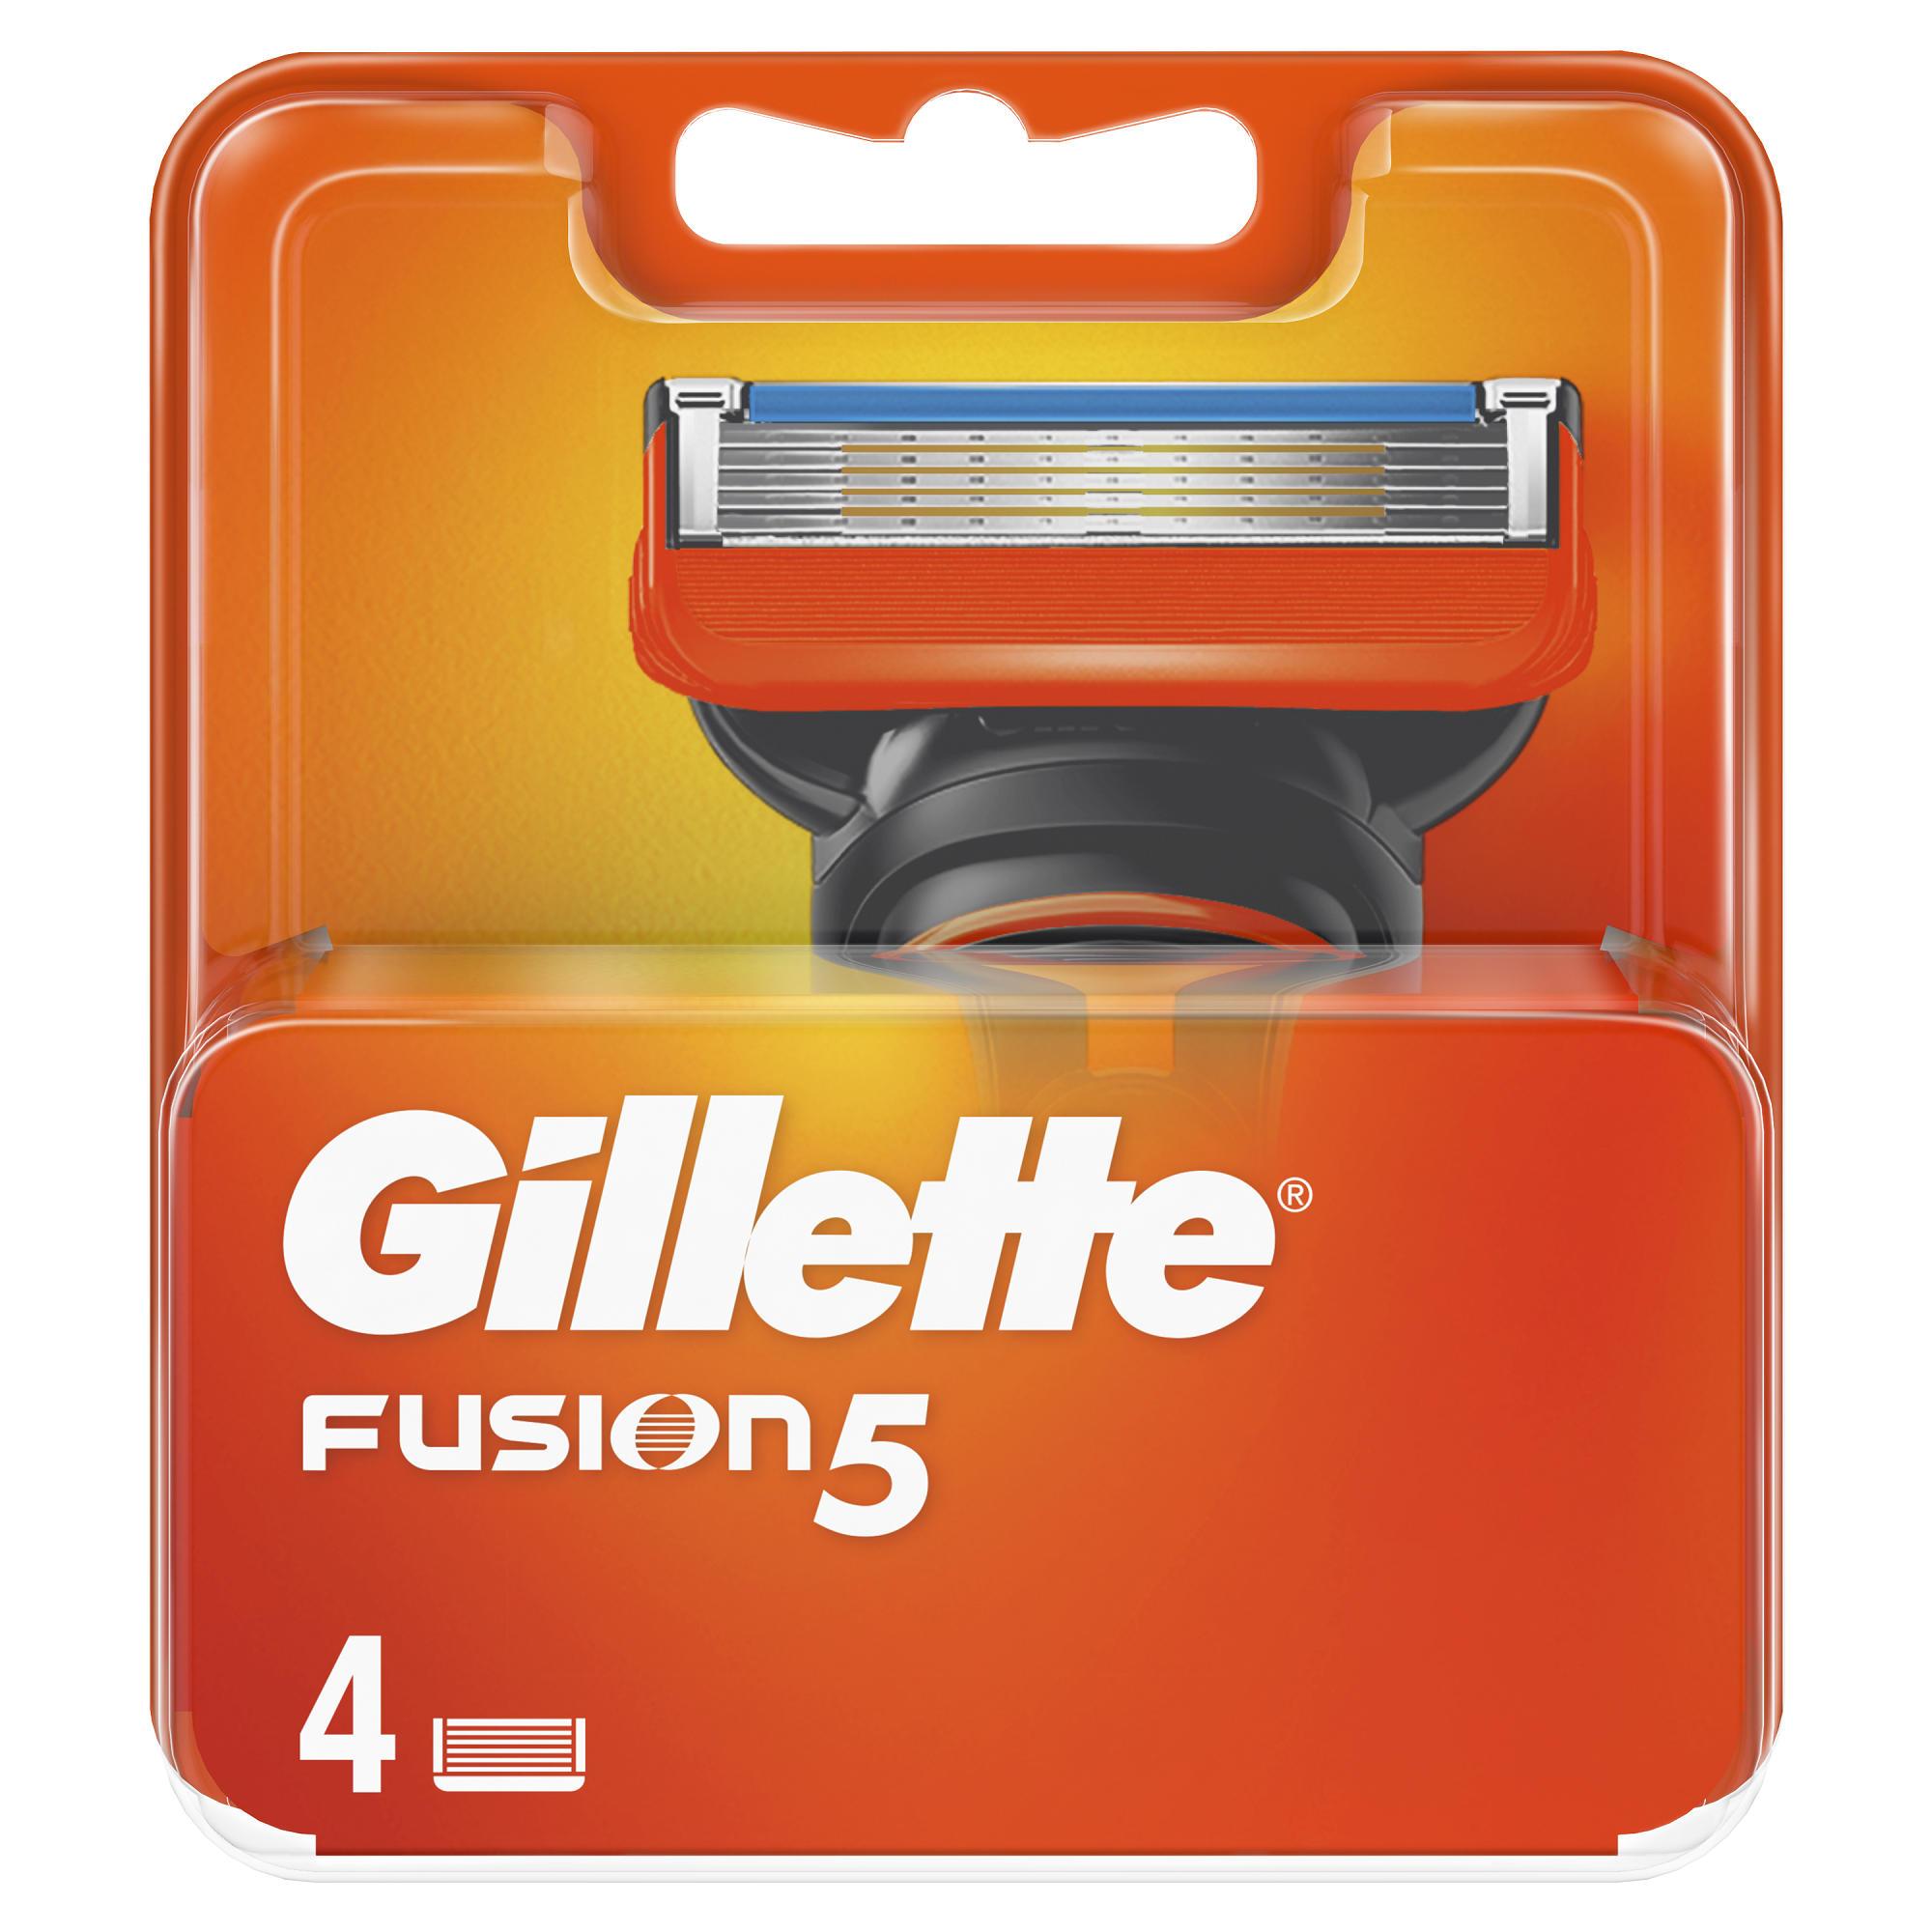 Rezerve pentru aparatul de ras Fusion 5, 4 bucati, Gillette